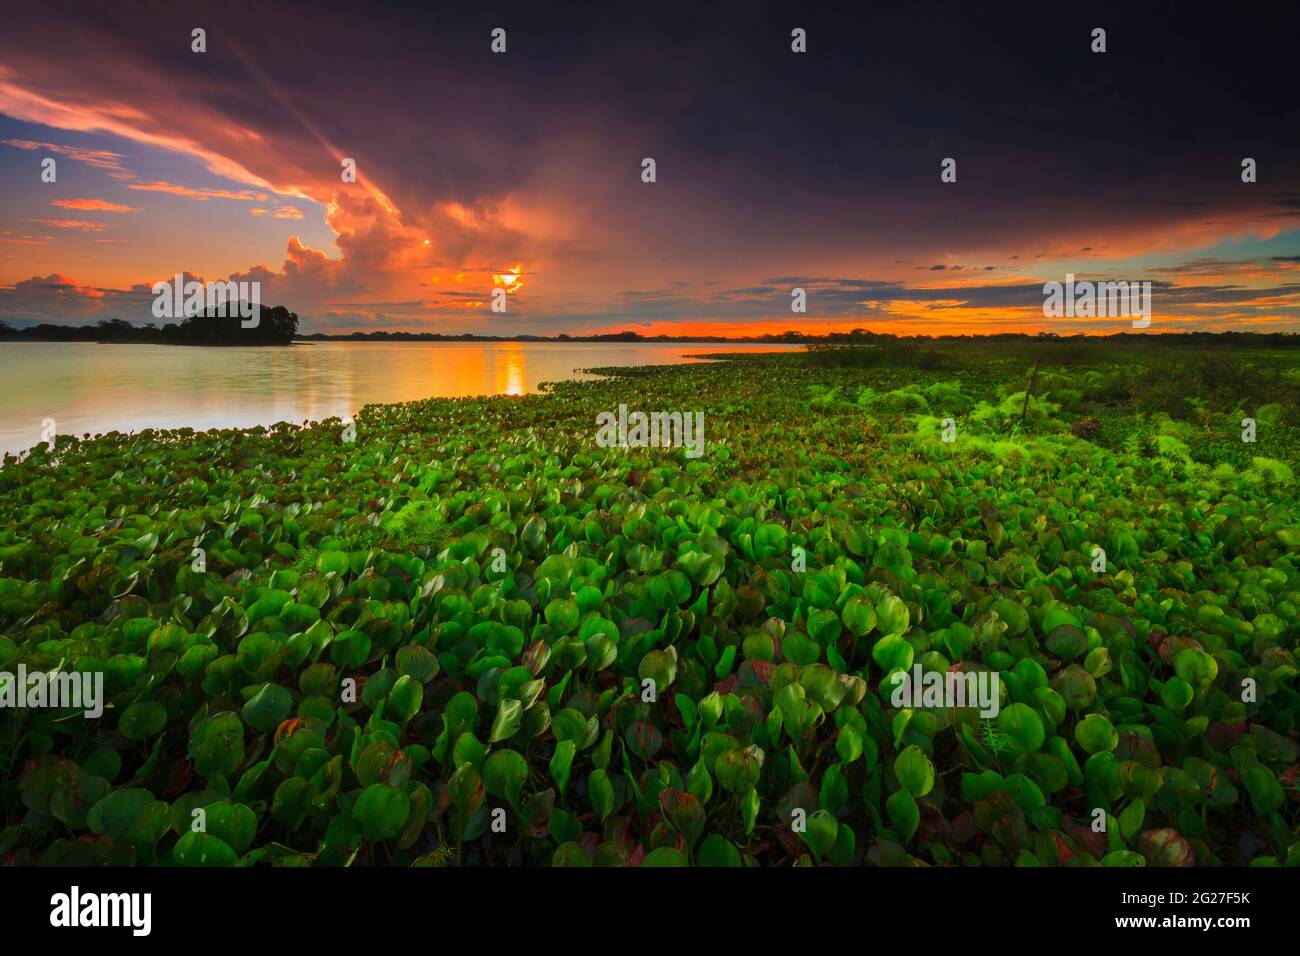 Panama paysage au coucher du soleil au bord du lac de Refugio de vida Silvestre Cienage las Macanas réserve naturelle, province de Herrera, République du Panama. Banque D'Images